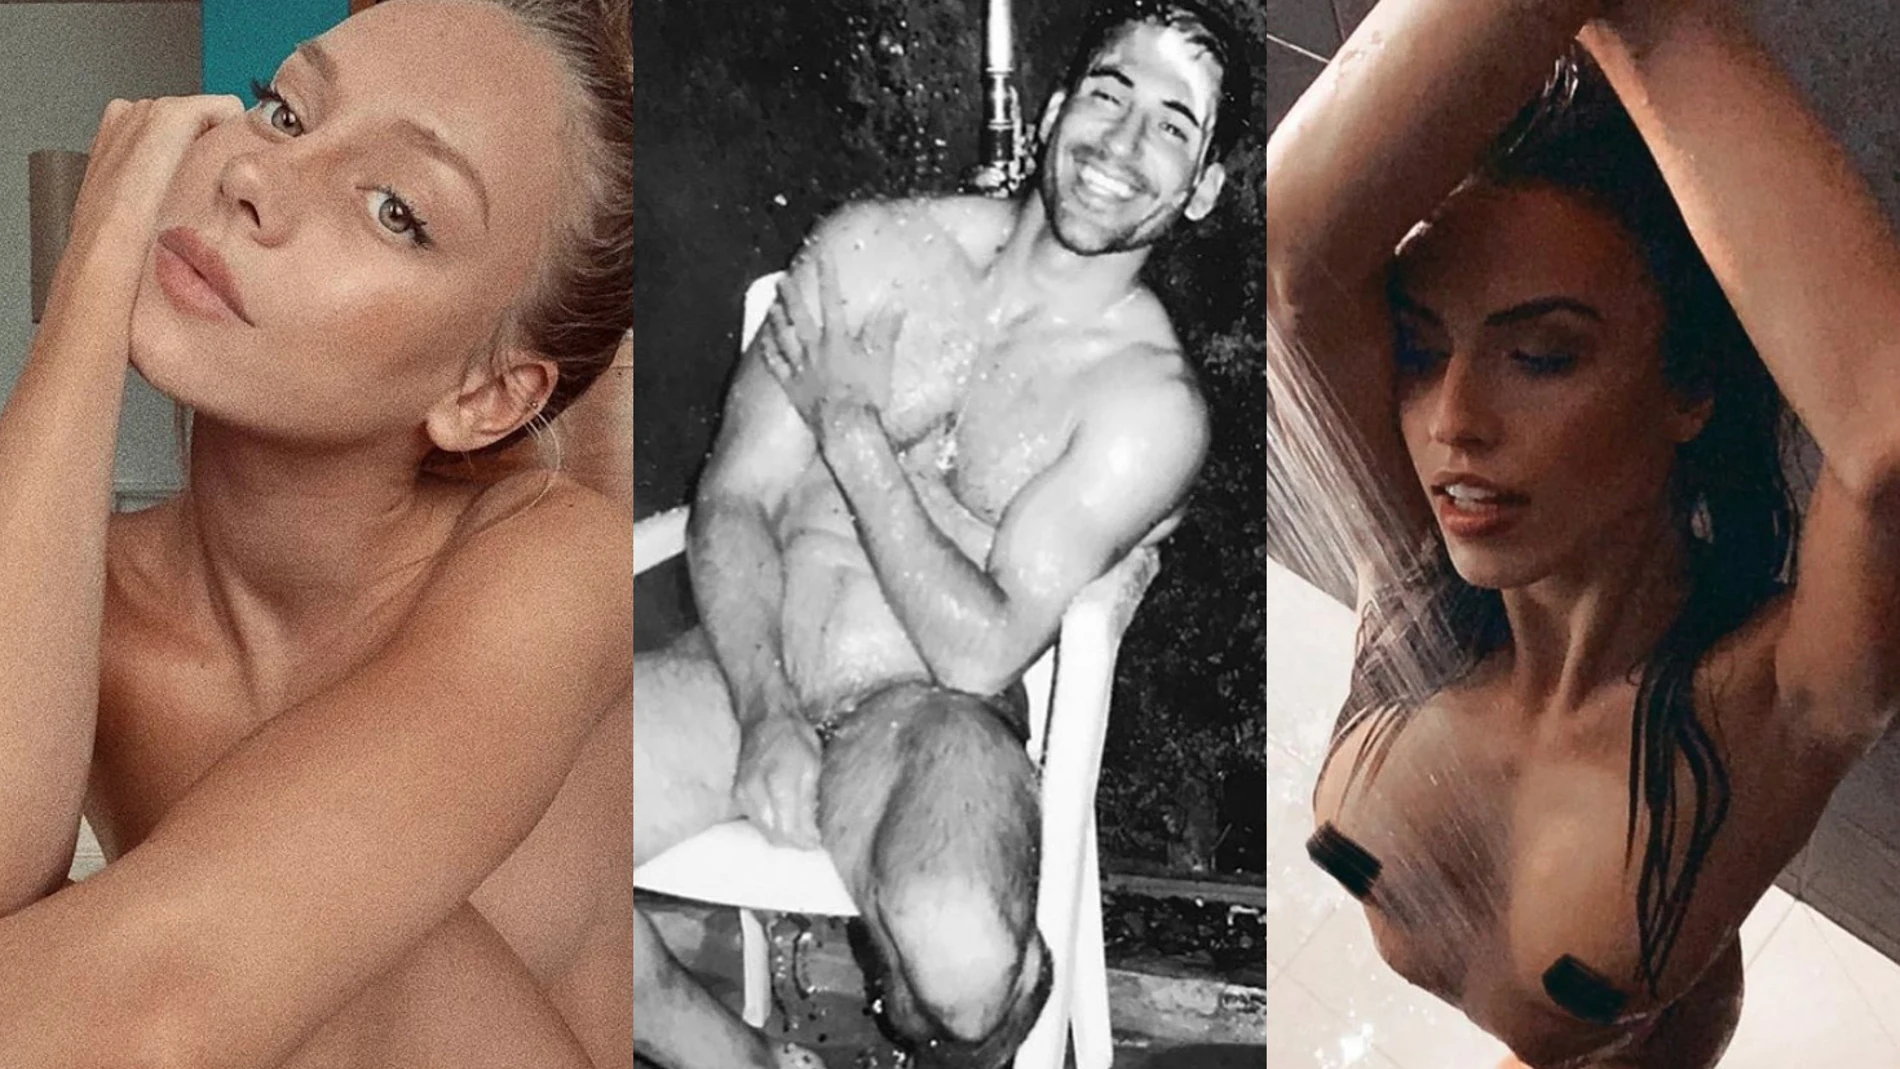 Ester Expósito, Miguel Ángel Silveste y Sofía Suescun protagonizaron algunos de los mejores desnudos de Instagram durante el estado de alarma